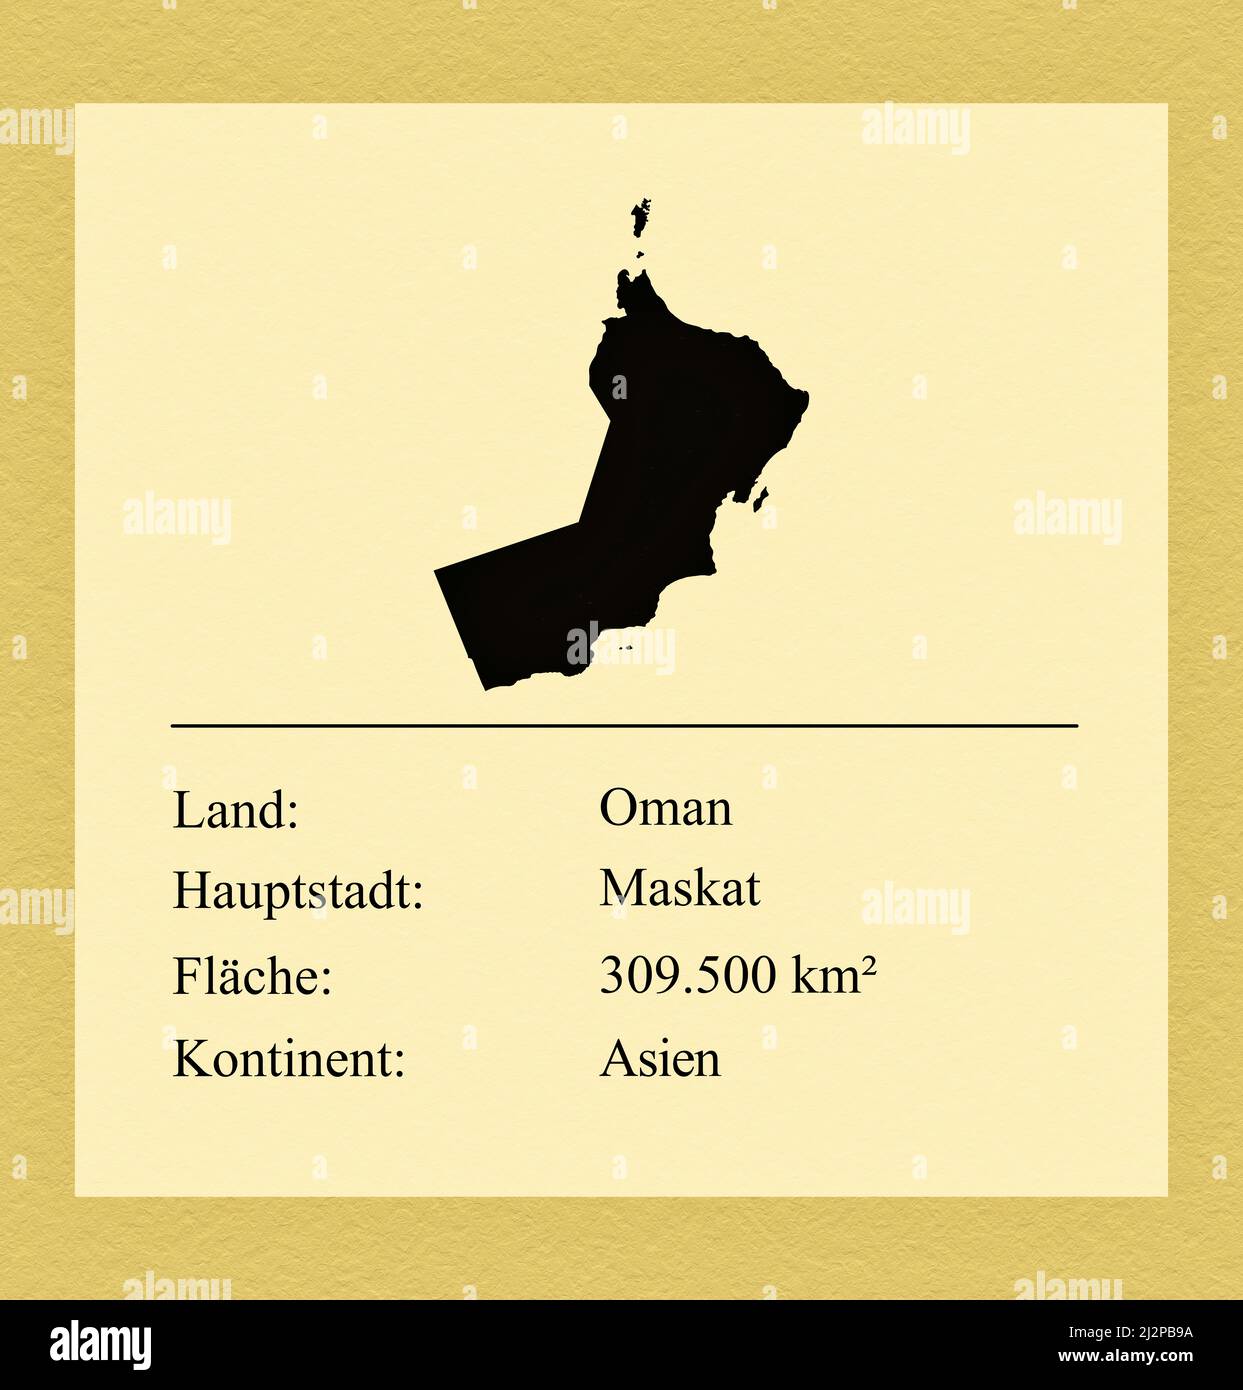 Umrisse des Landes Oman, darunter ein kleiner Steckbrief mit Ländernamen, Hauptstadt, Fläche und Kontinent Stock Photo